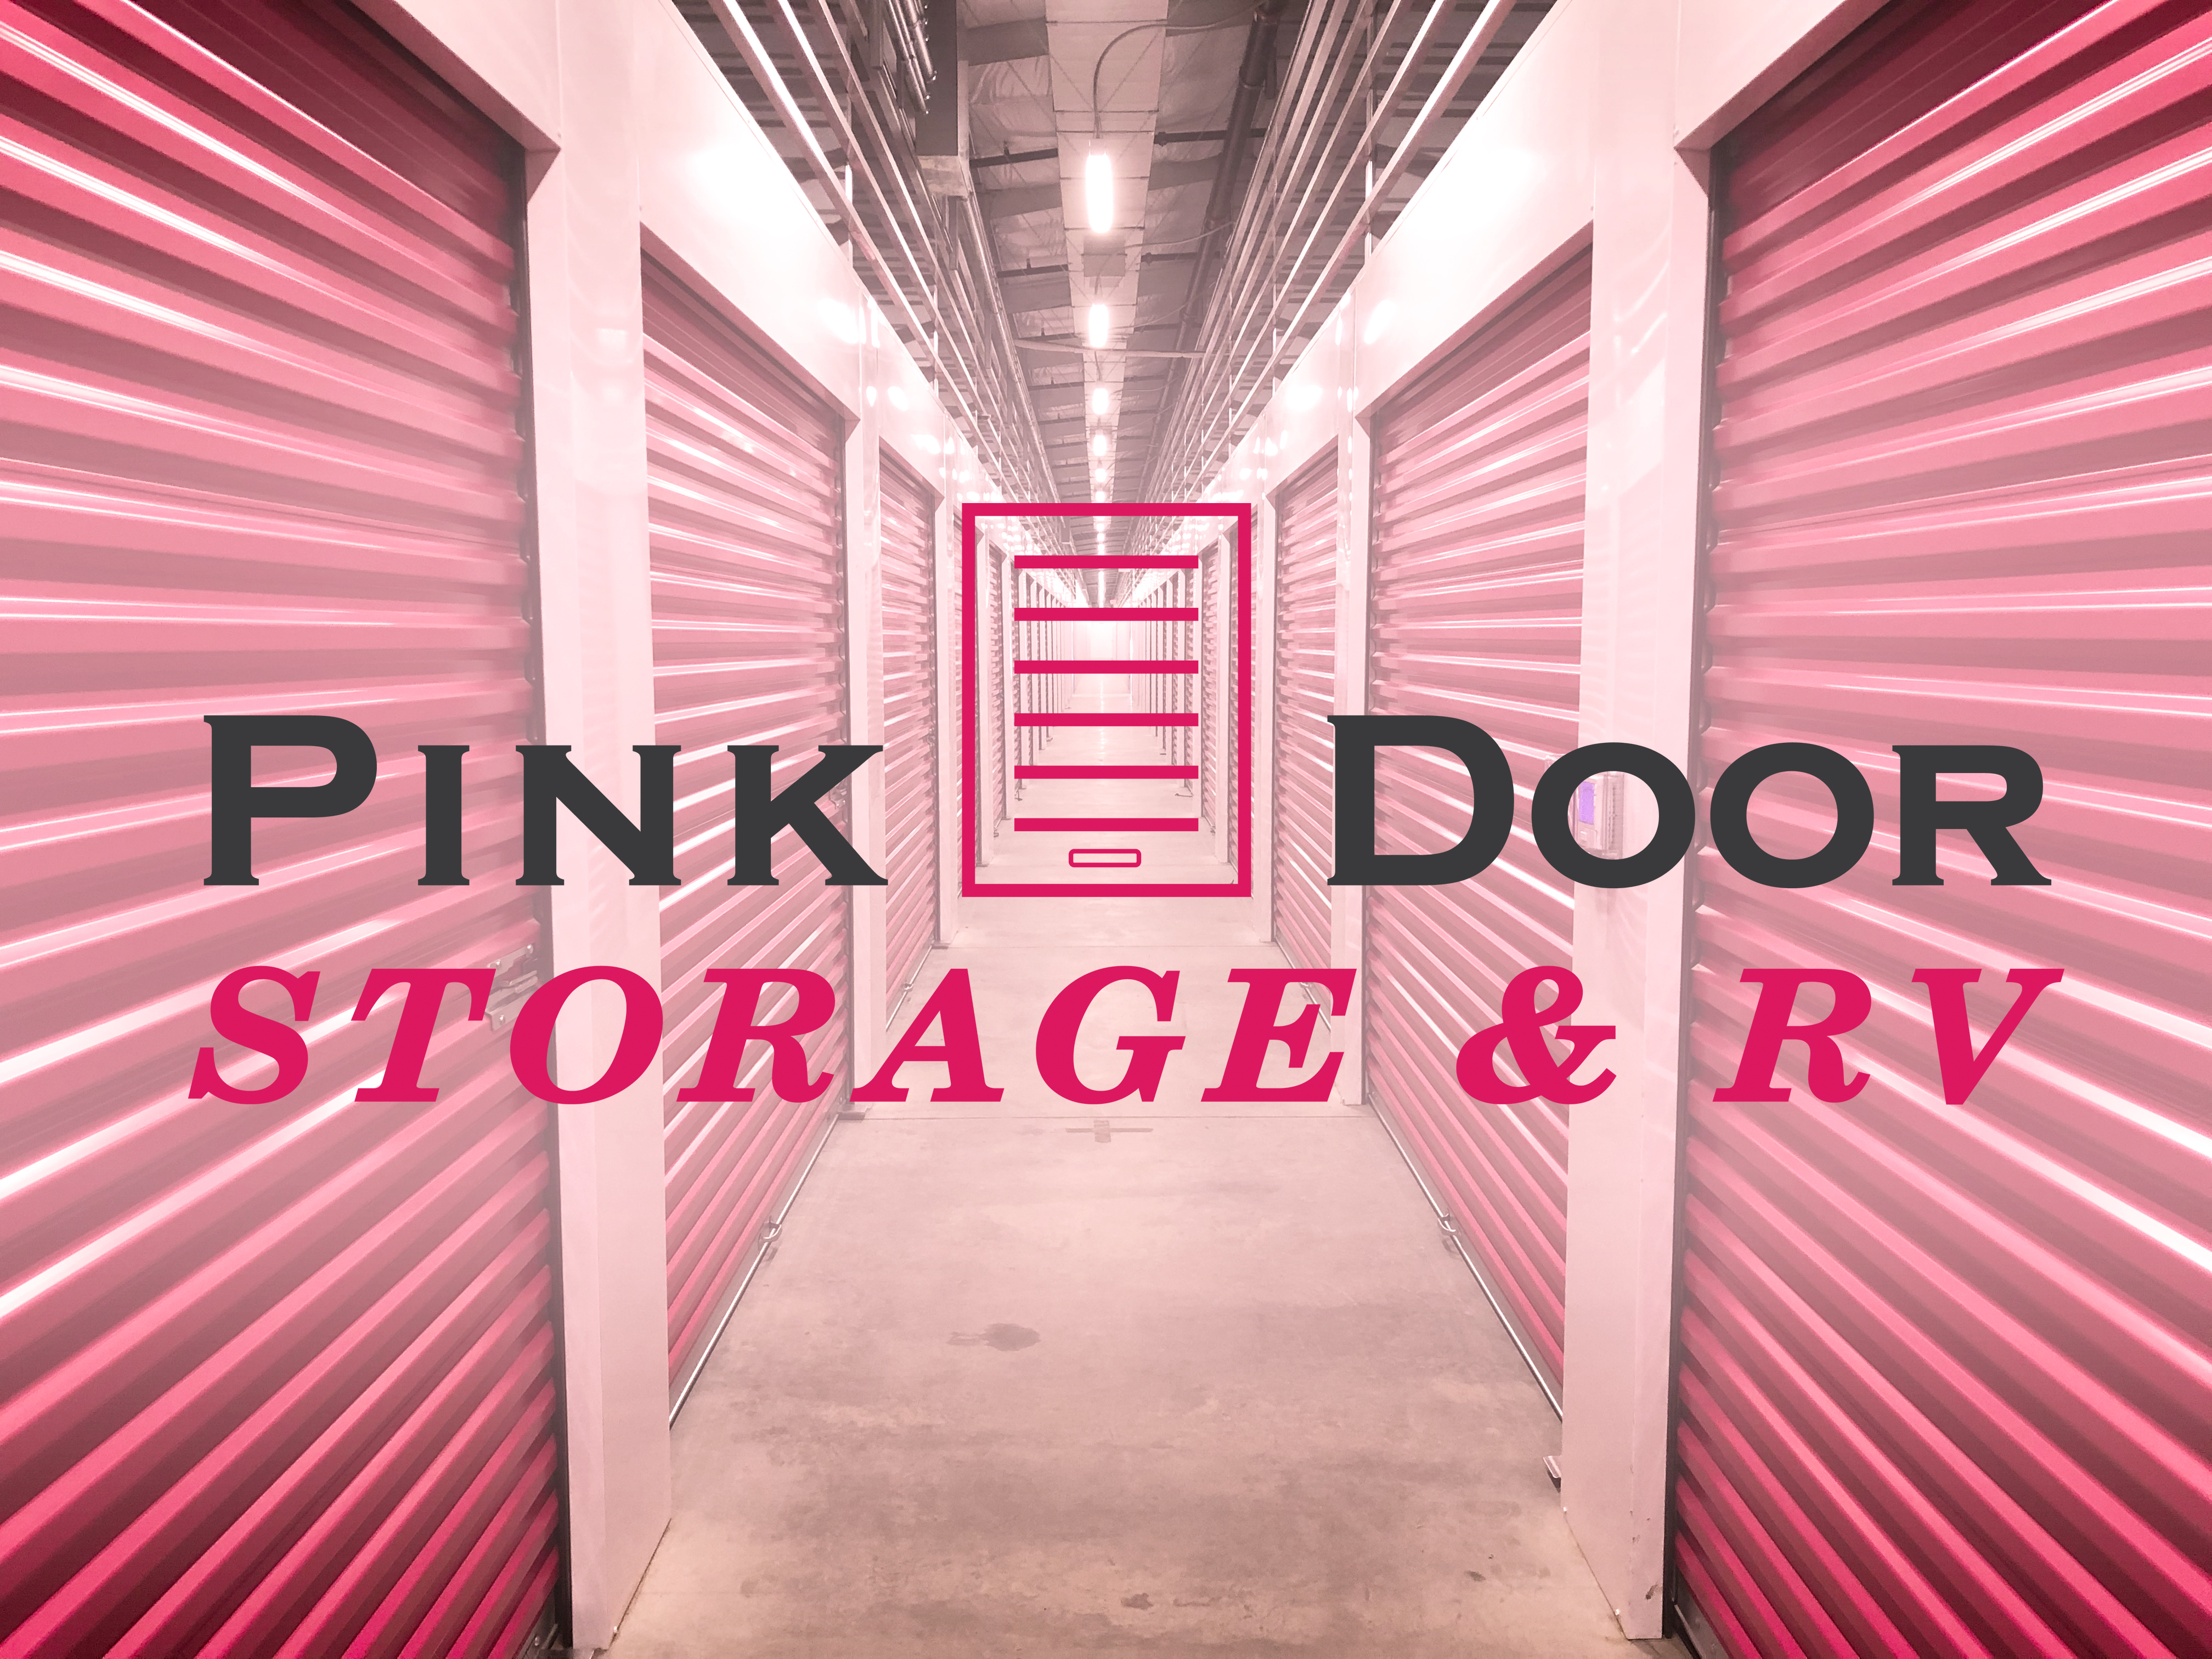 Pink Door Storage & RV - Gilbert AZ